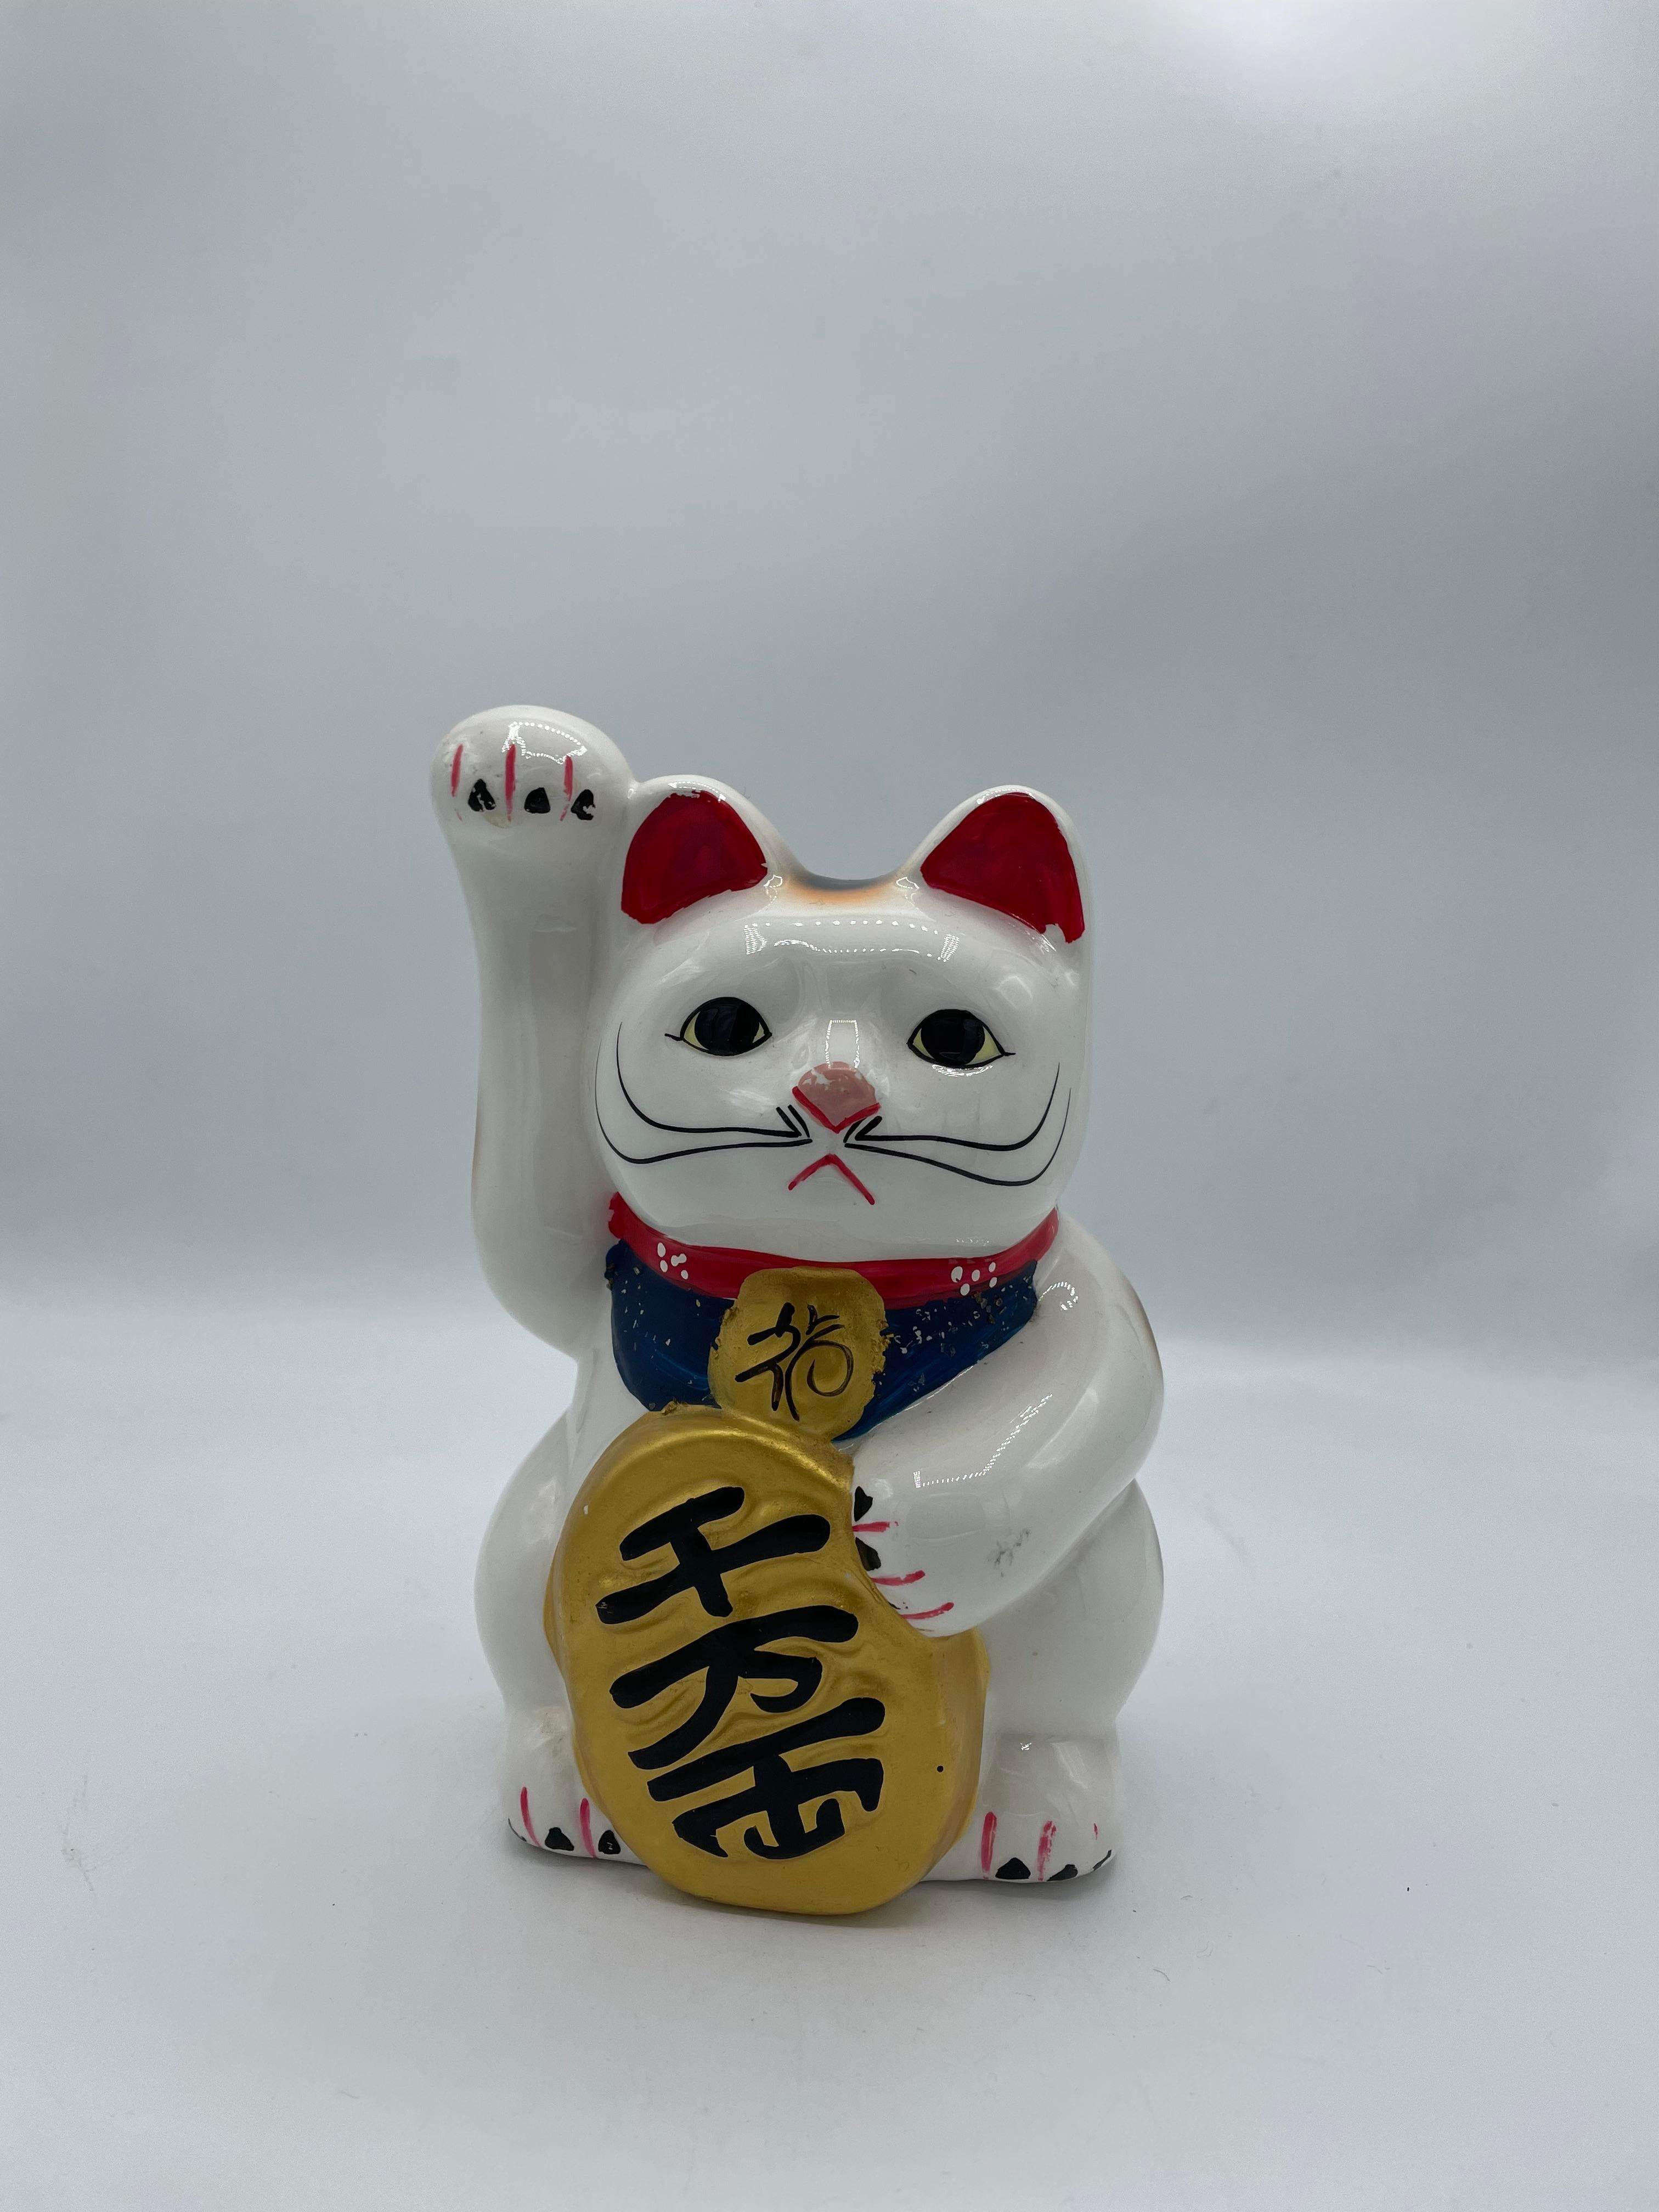 Dies ist ein Vintage-Sparschwein von manekineko Katze. Es ist mit Porzellan gemacht und es wurde um 1980er Jahre in Showa-Ära gemacht.

Das Maneki-Neko ist eine japanische Figur, von der man glaubt, dass sie dem Besitzer Glück bringt. Heutzutage